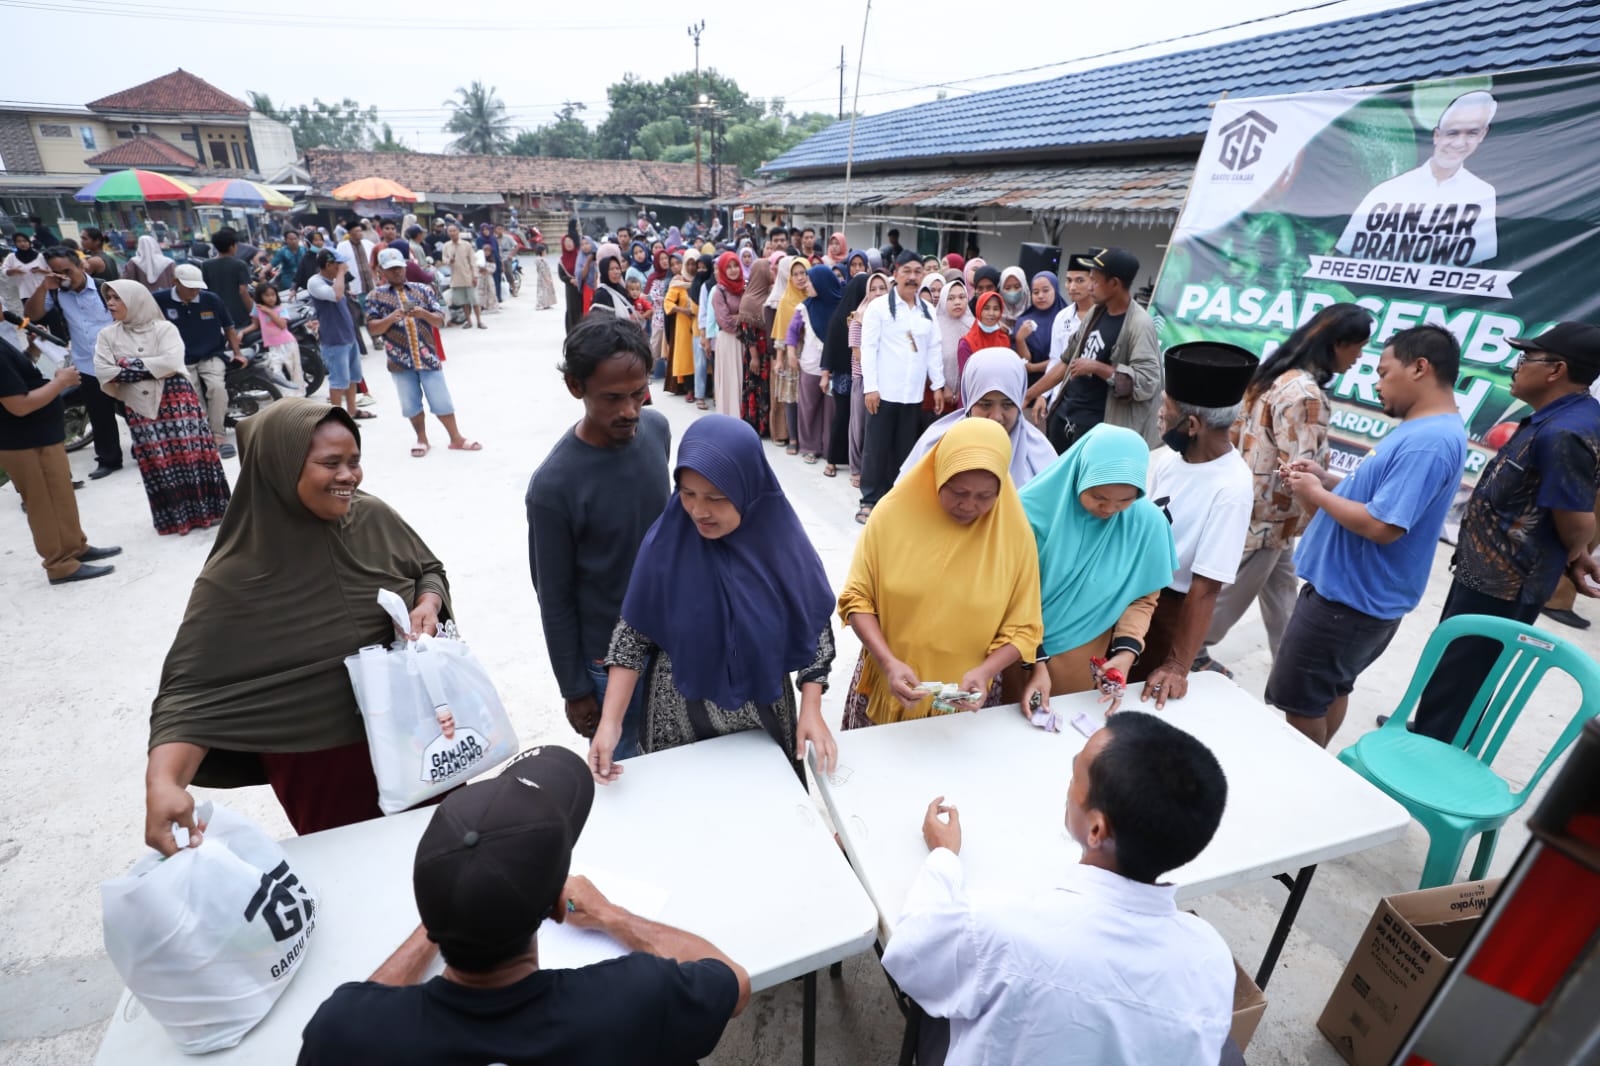 Gardu Ganjar Banten Gelar Pasar Murah, 500 Paket Sembako Diserbu Warga Tangerang